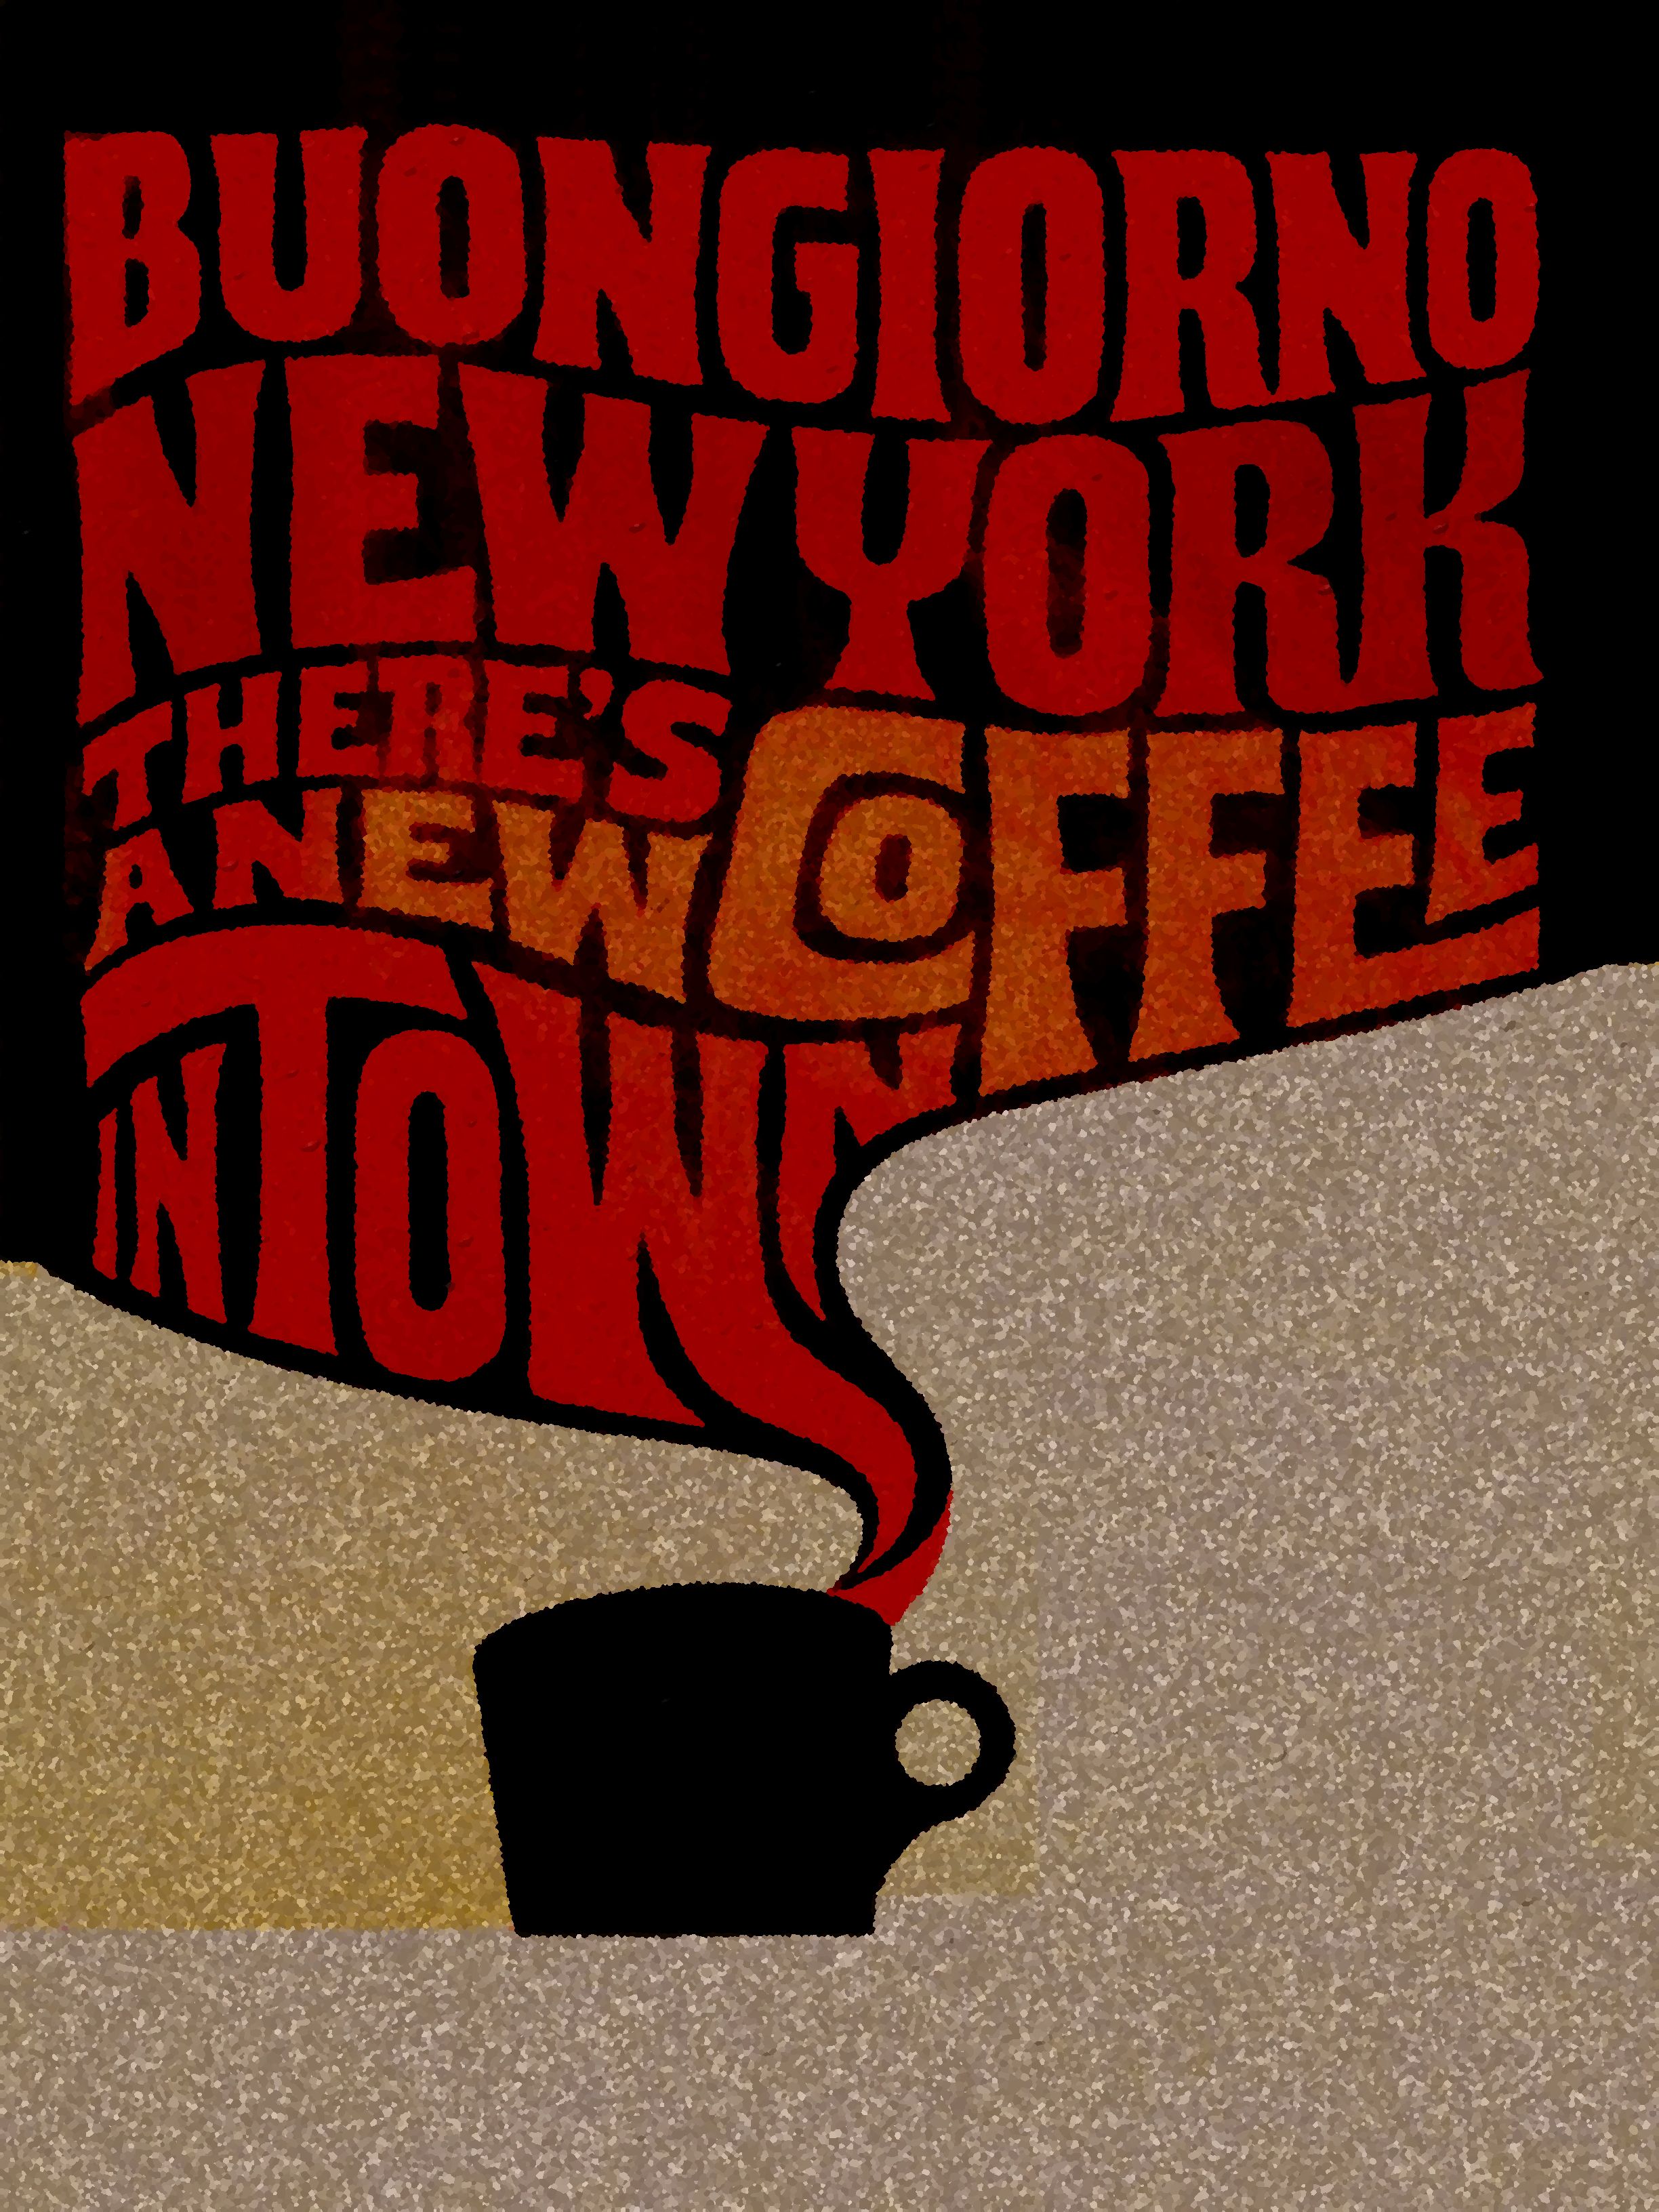 NYC coffee